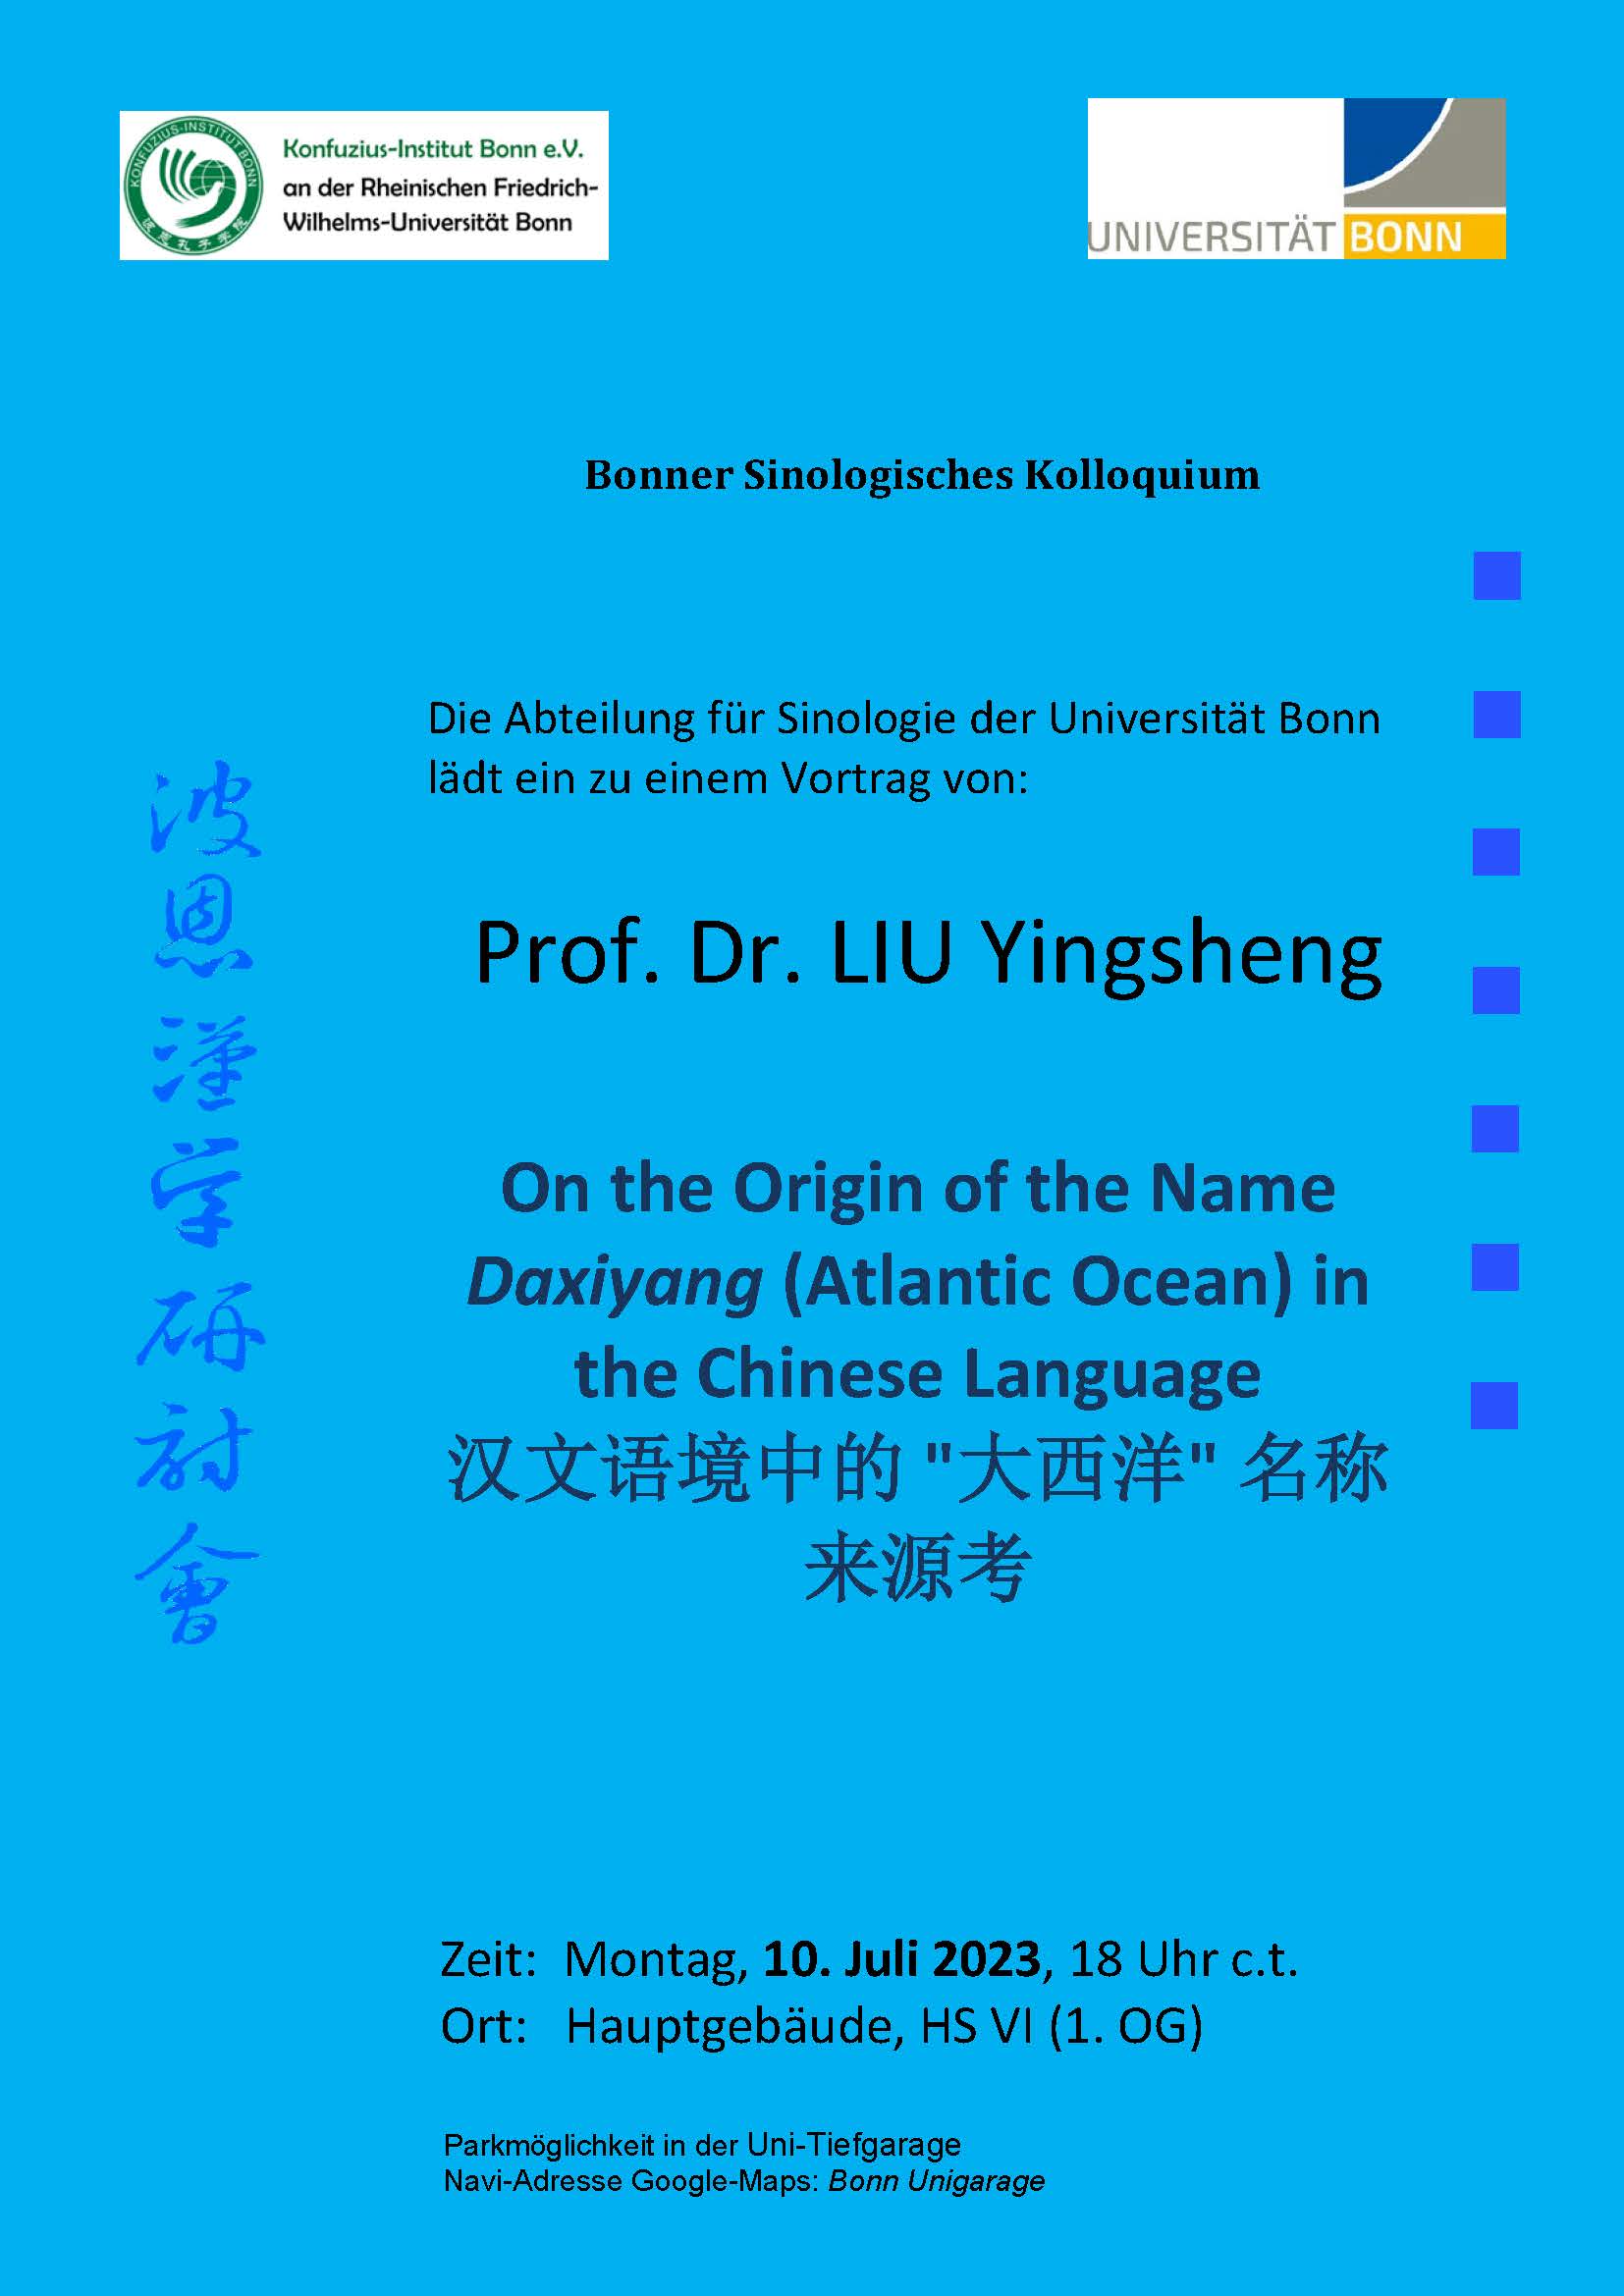 10.07.2023 Sinologisches Kolloquium: Prof. Dr. LIU Yingsheng